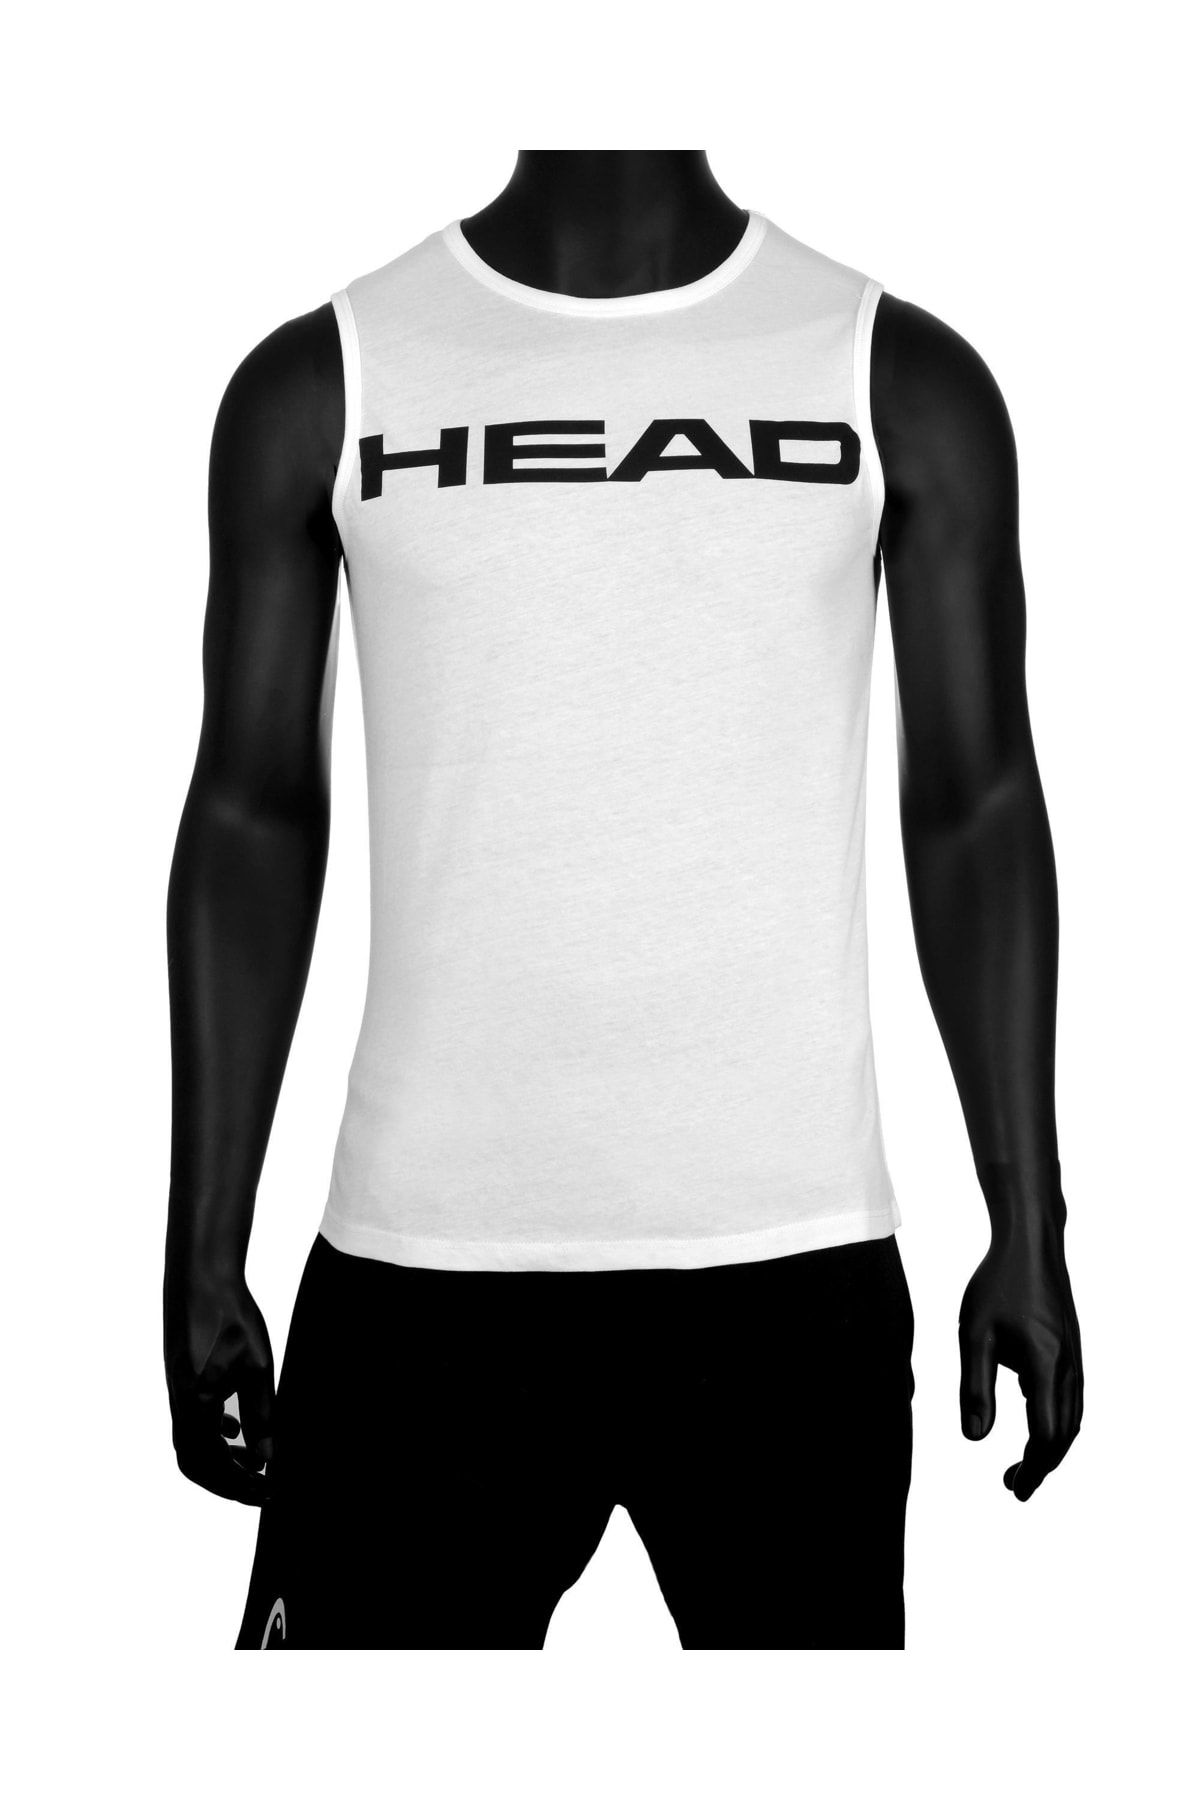 Head Erkek Beyaz Pamuklu Sıfır Kol Fitness T-shirt Sporcu Atleti Kolsuz Tanktop Tenis Tişörtü